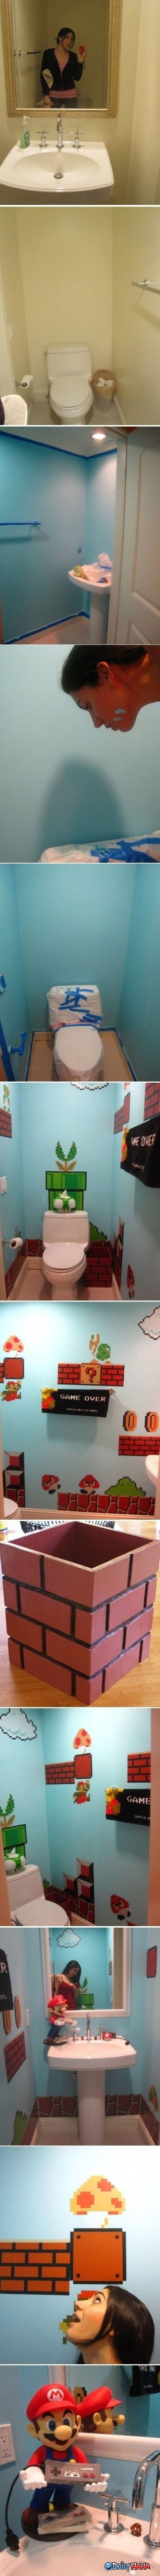 Mario Bathroom funny picture